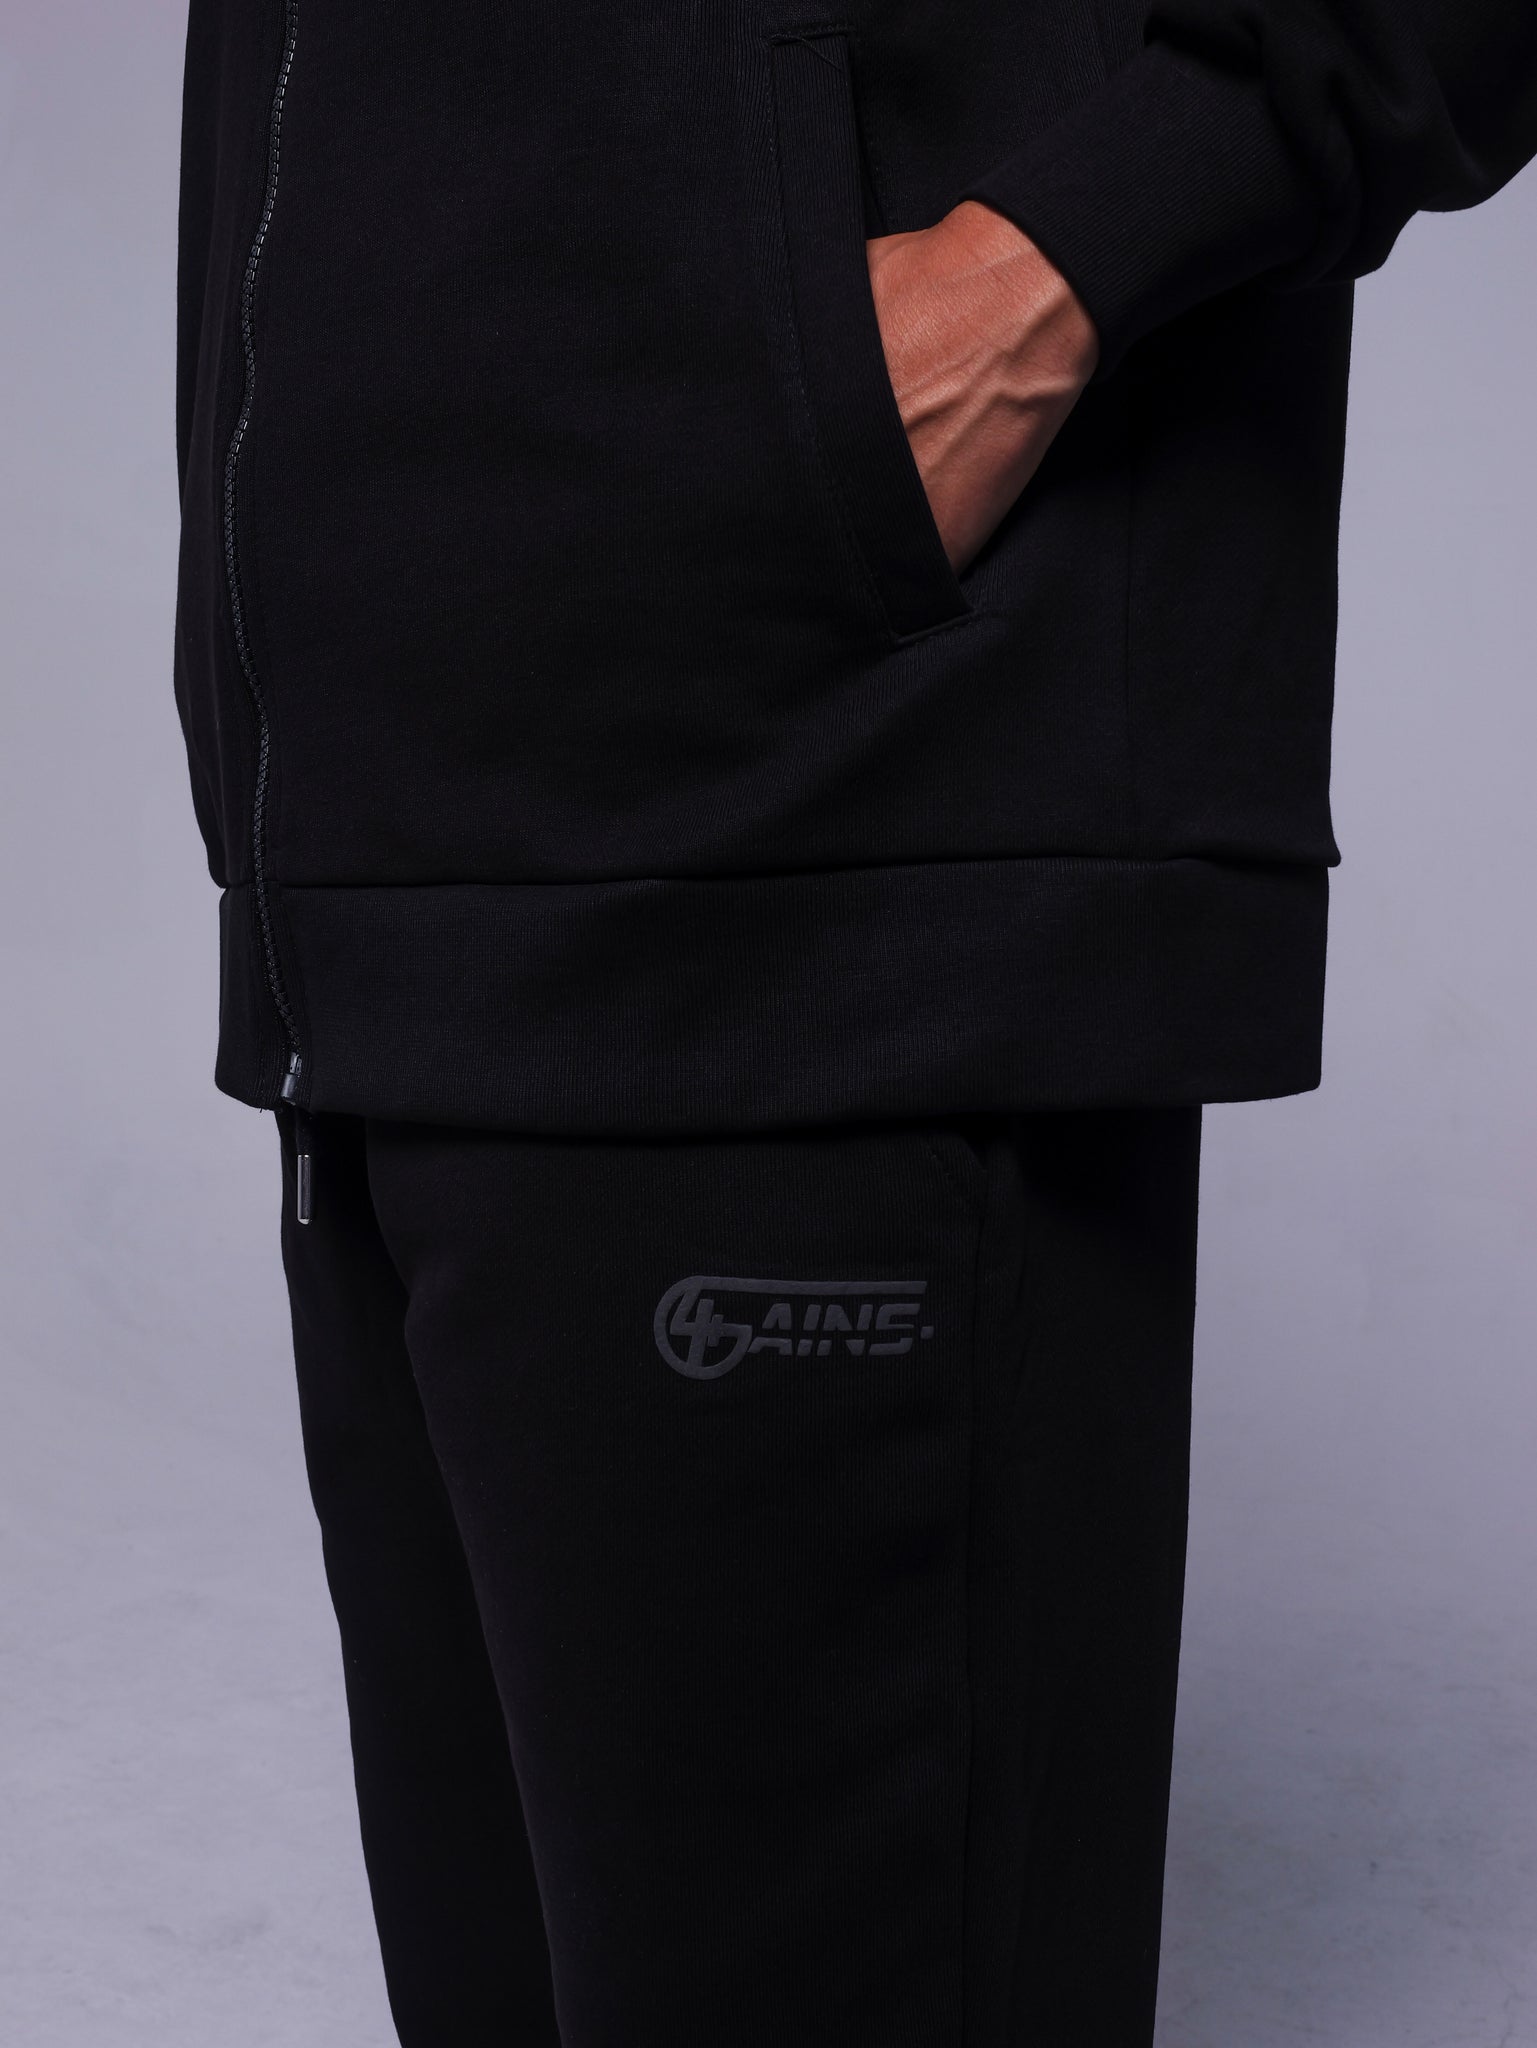 4GAINS Tracksuit Hose in der Farbe schwarz mit schwarzem Puff Print an einem Model